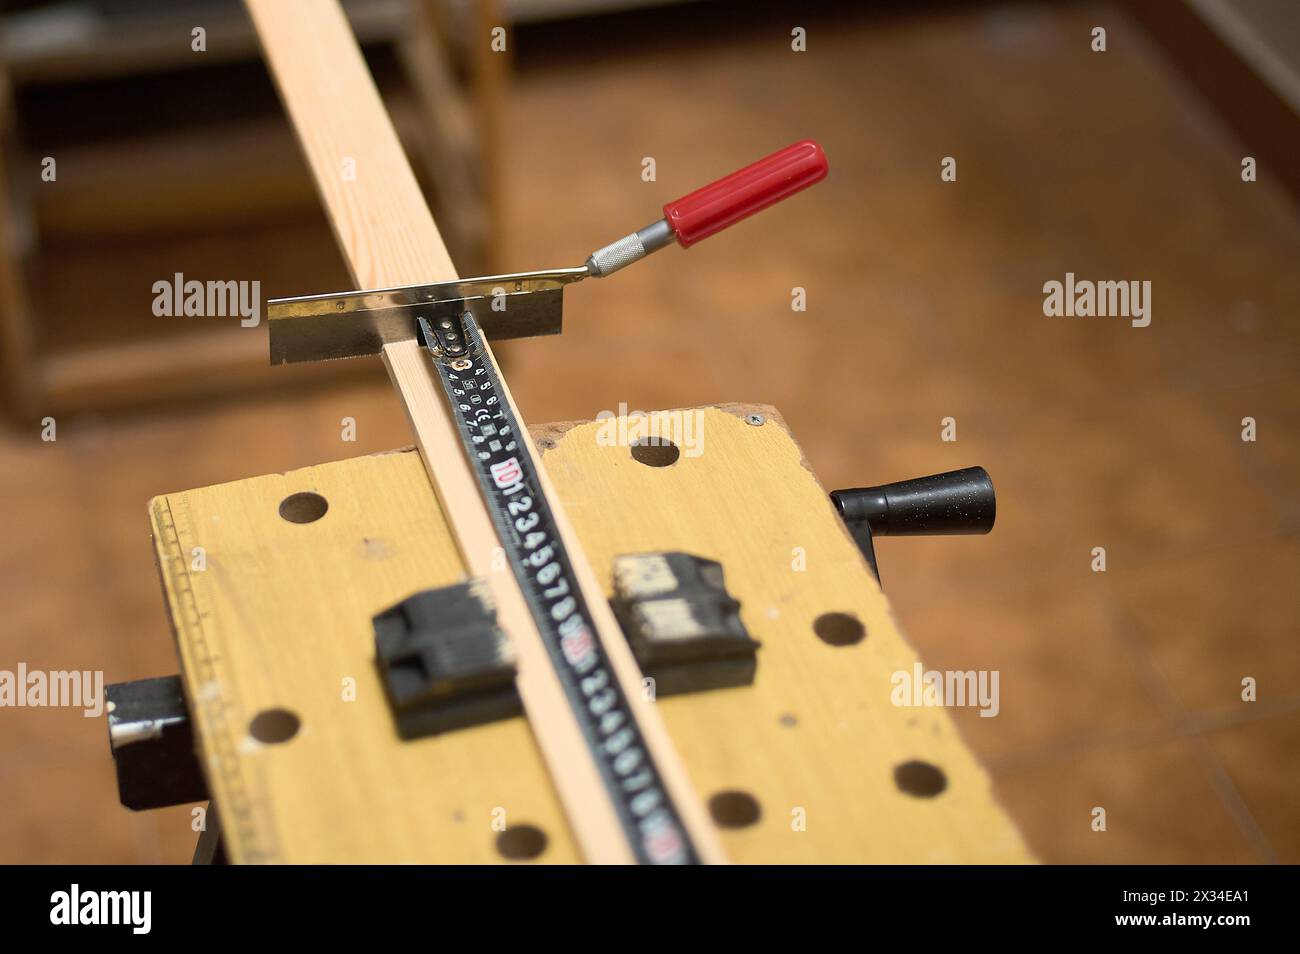 Image détaillée d'une scie et d'un ruban à mesurer dans un atelier de menuiserie, mettant en valeur la précision et l'habileté dans le travail manuel. Banque D'Images